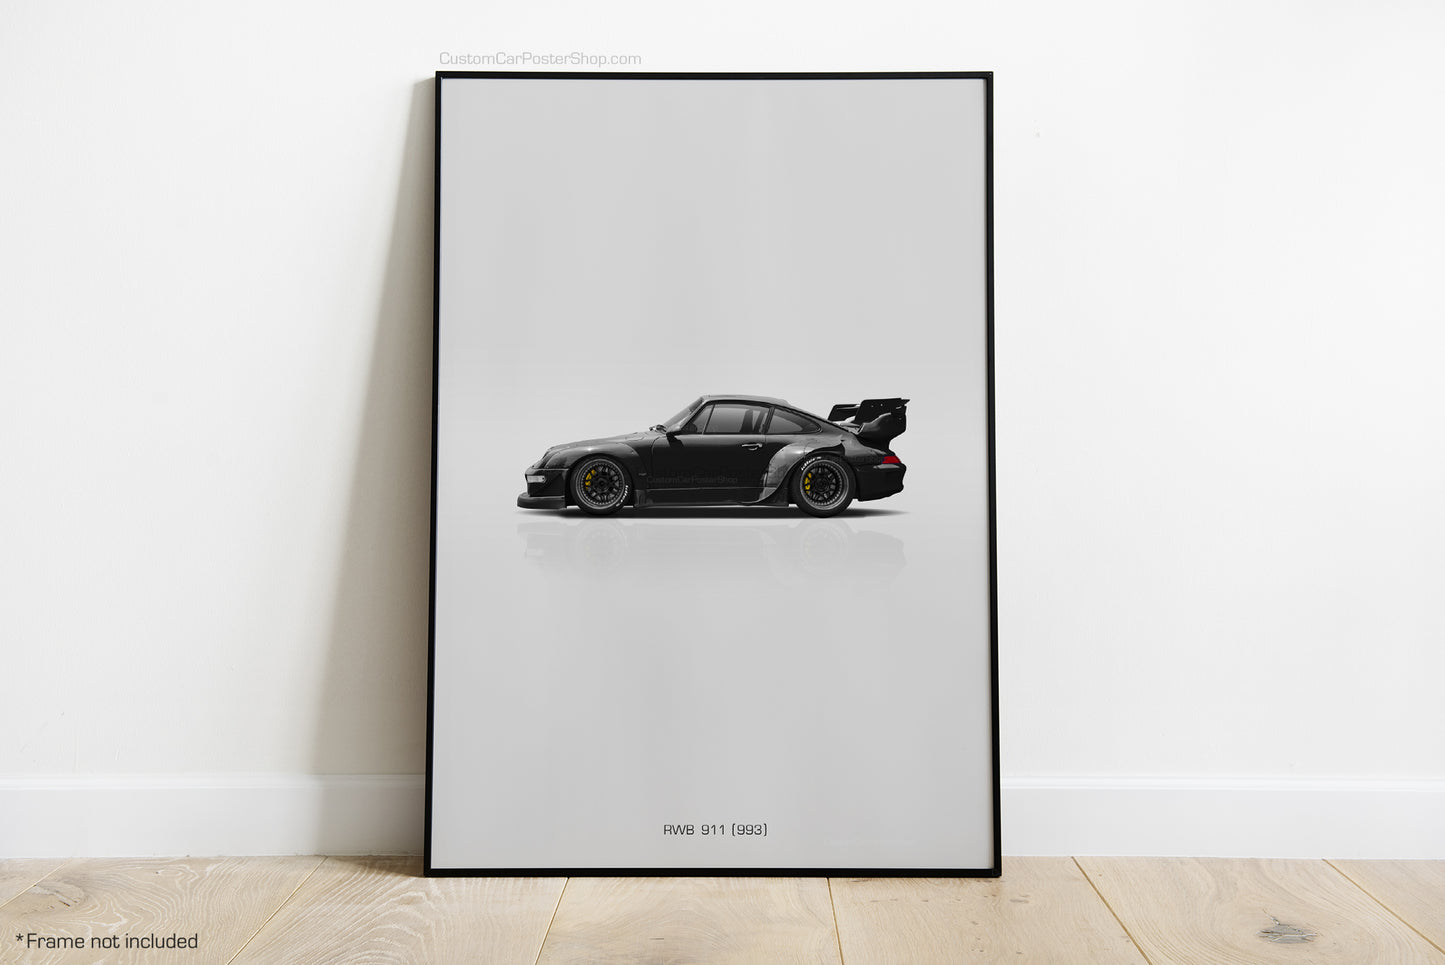 RWB Porsche 993 Poster - Wall Decor Wall Art